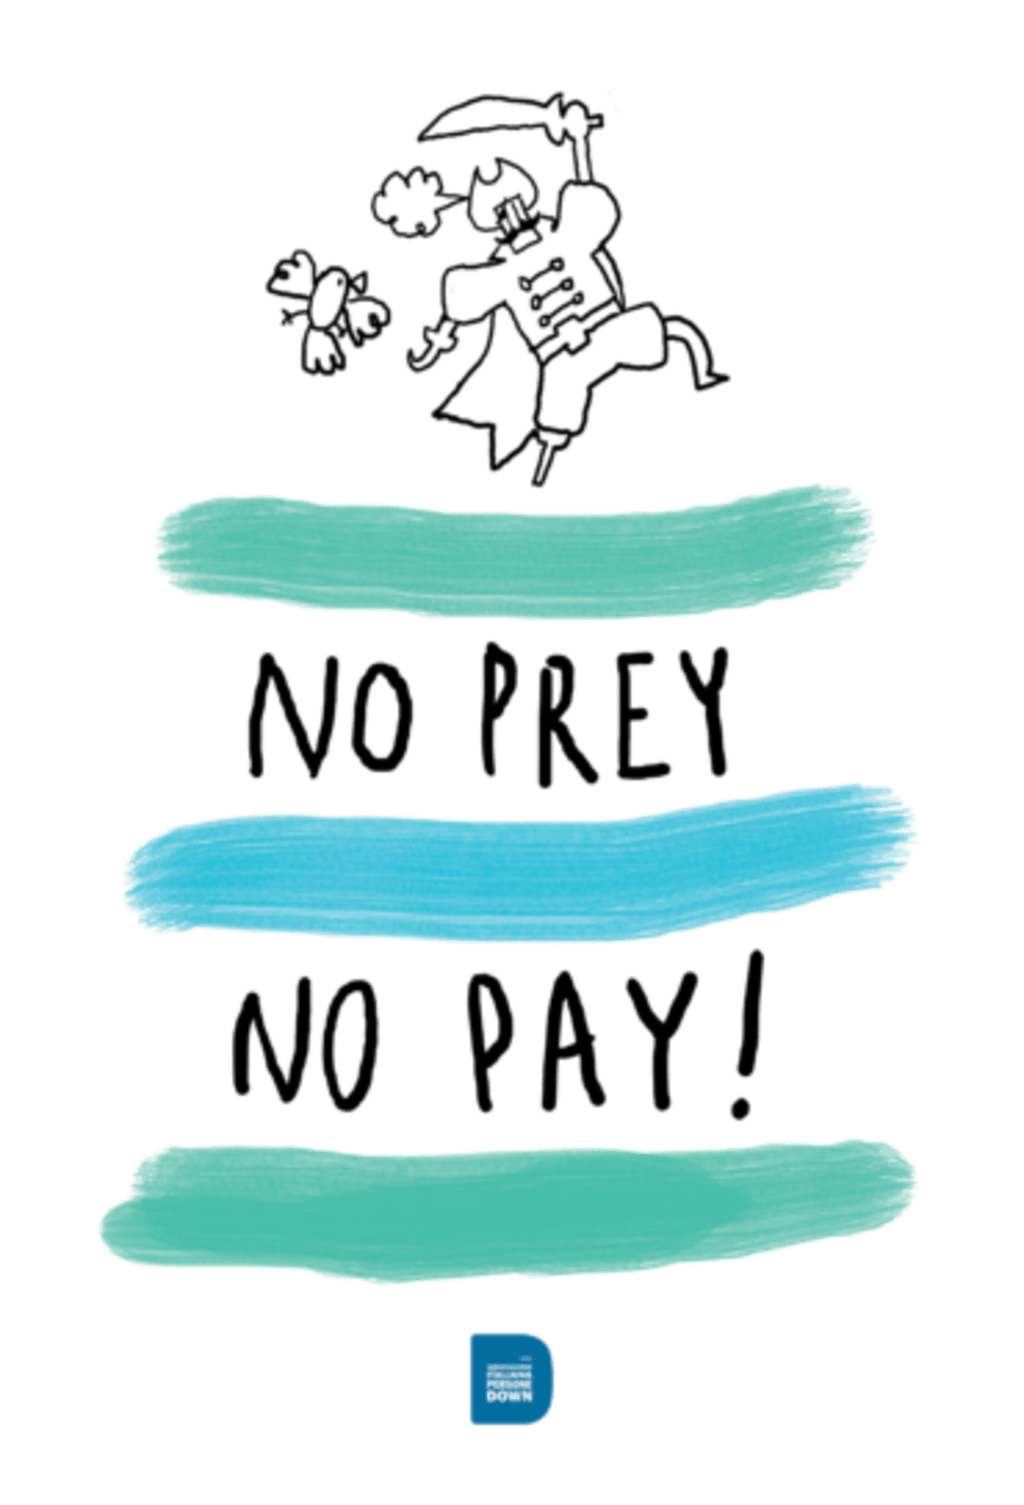 No prey No pay!